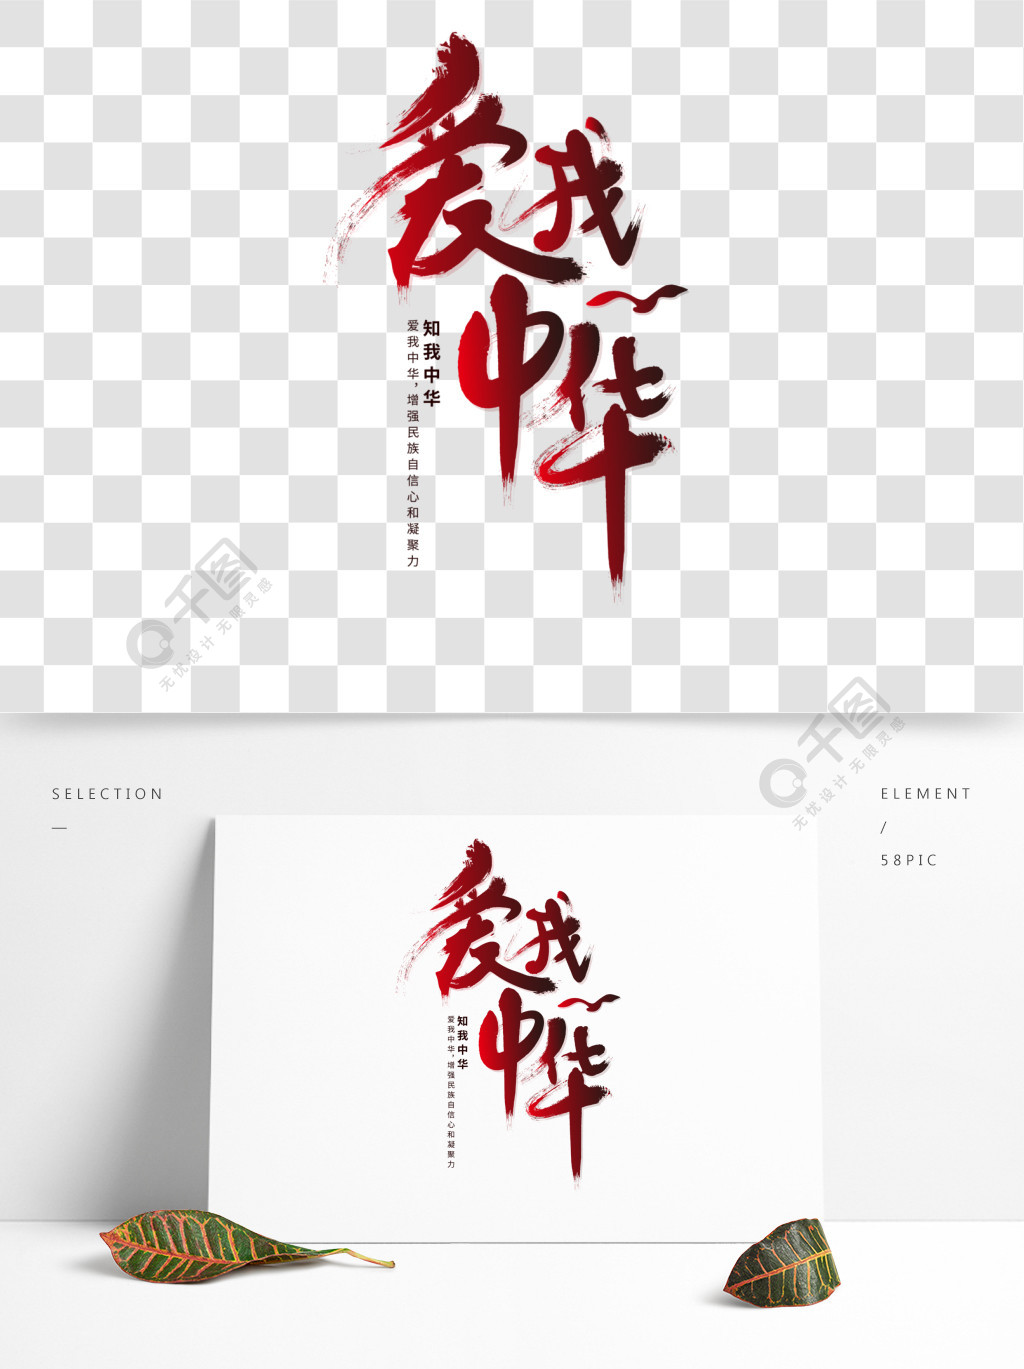 爱我中华手写字体设计2年前发布